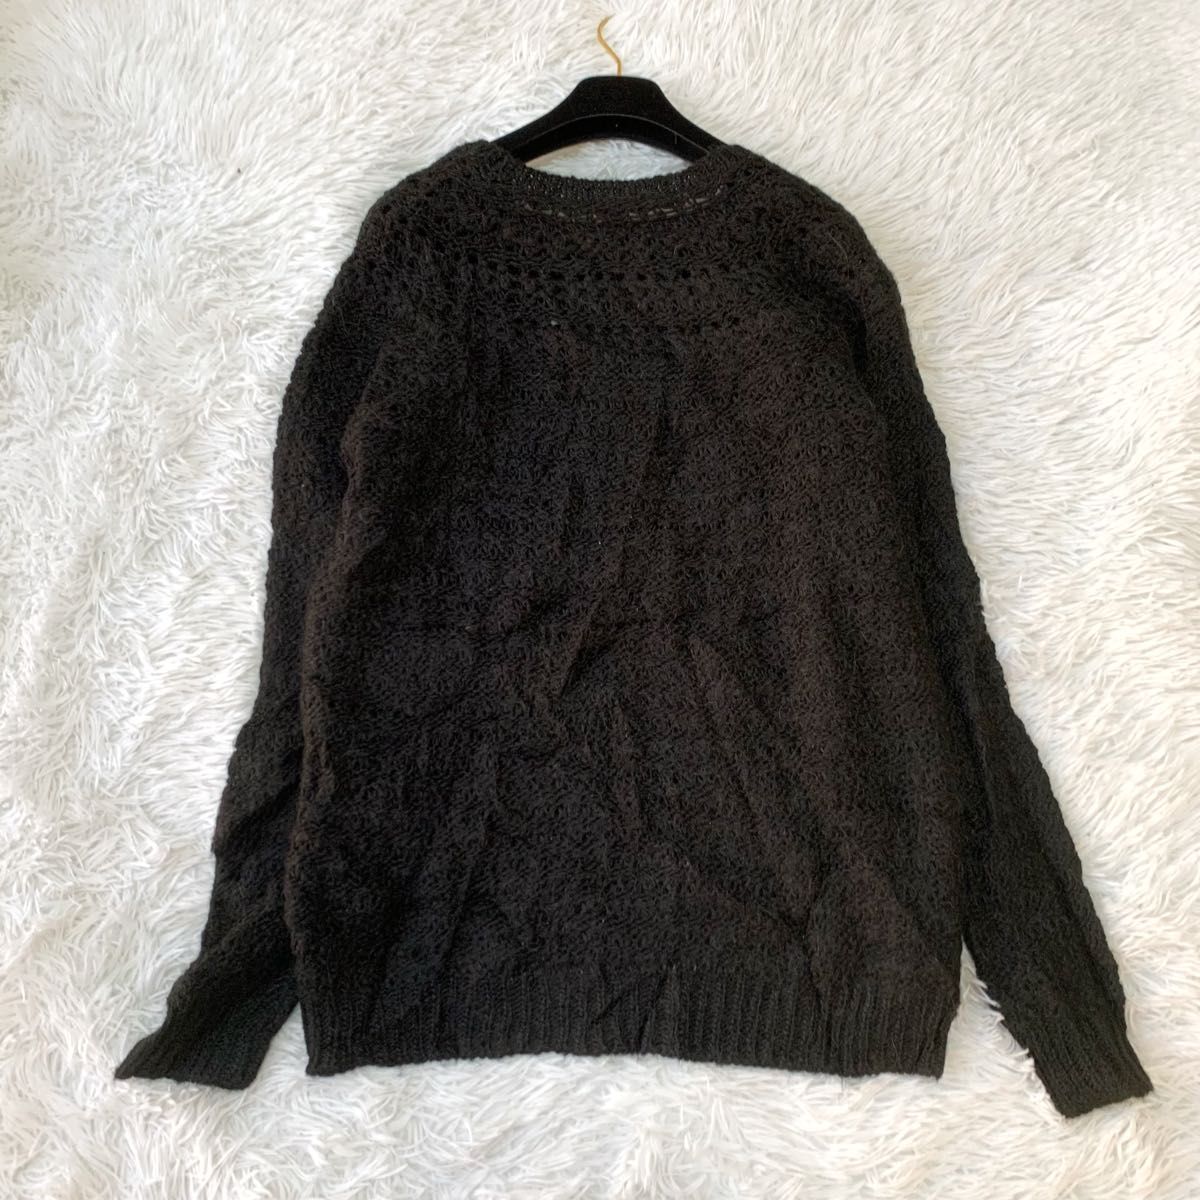 【美品】LAUREN RALPH LAUREN ローレンラルフローレン アルパカ混かぎ編みニットセーター 大きいサイズ XL